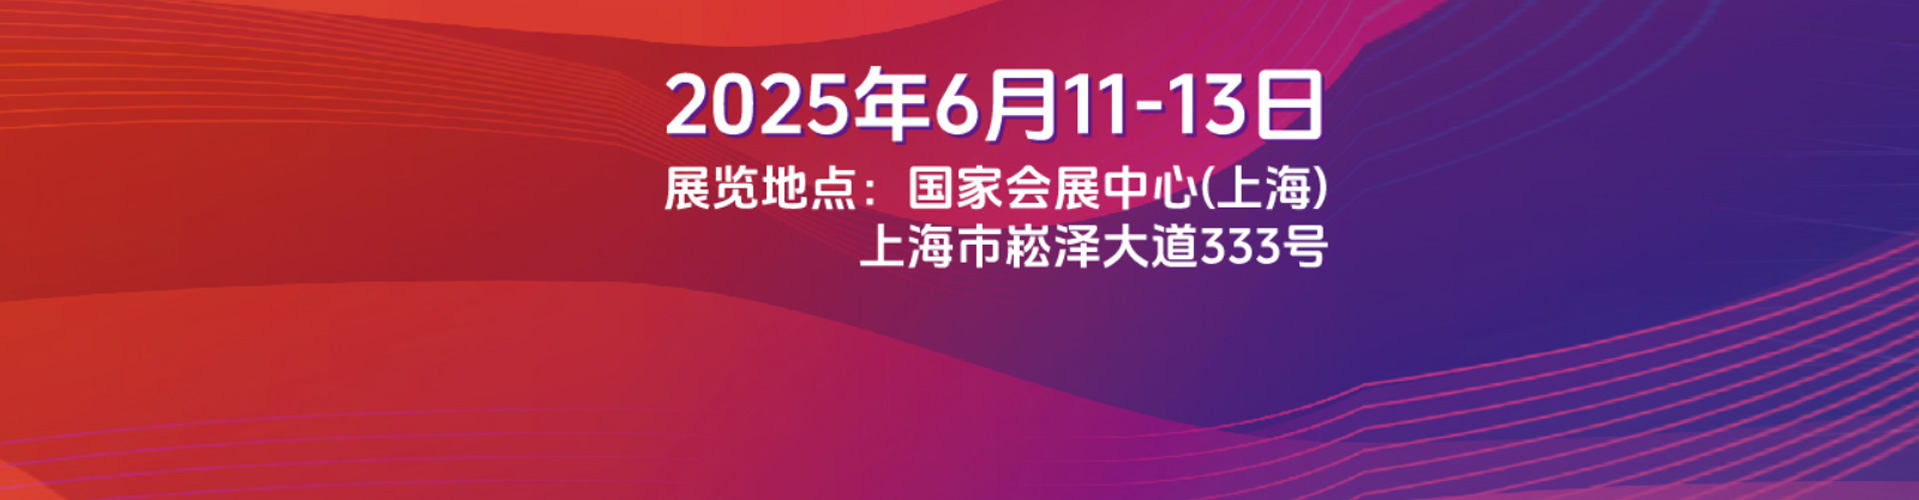 上海12月光伏展-SNEC2022光伏展官宣-2022年12月27-29日